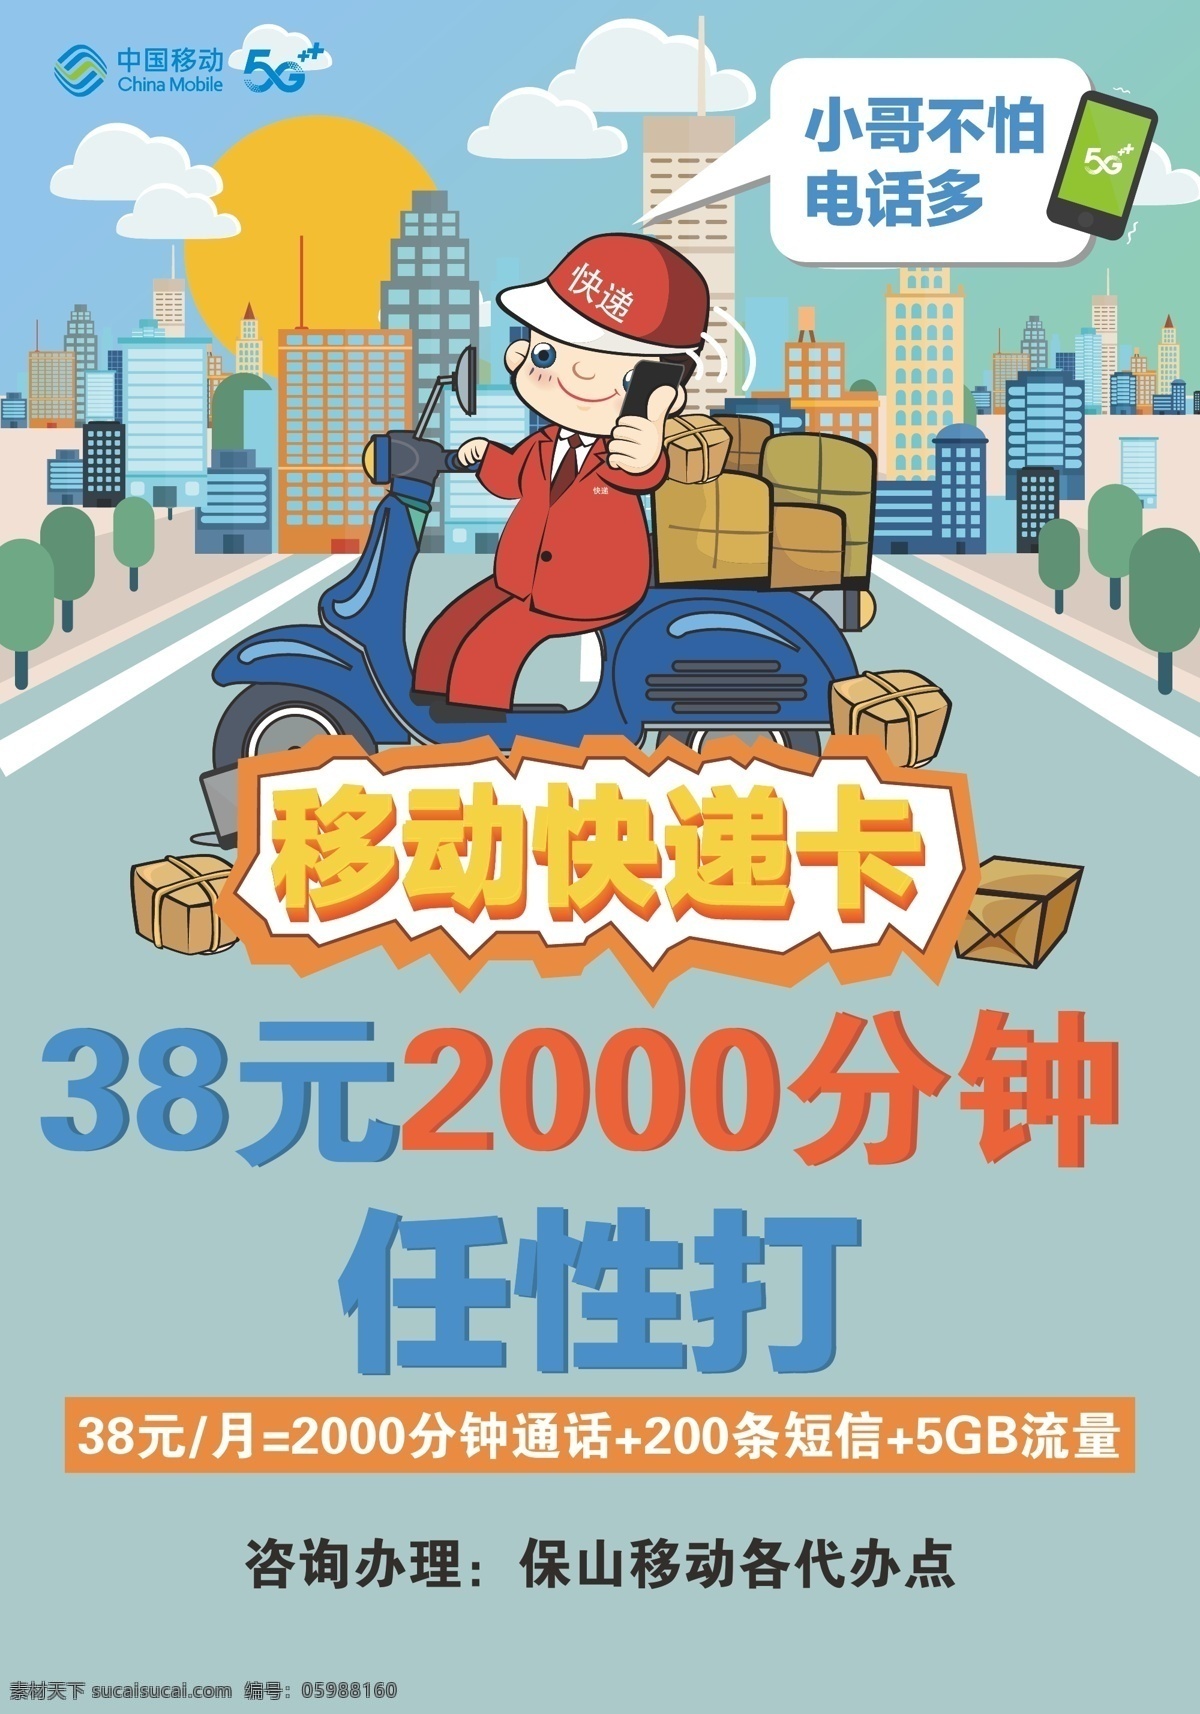 移动 快递 卡 中国移动 快递卡 优惠 移动5g 城市 手机dm单页 室内广告设计